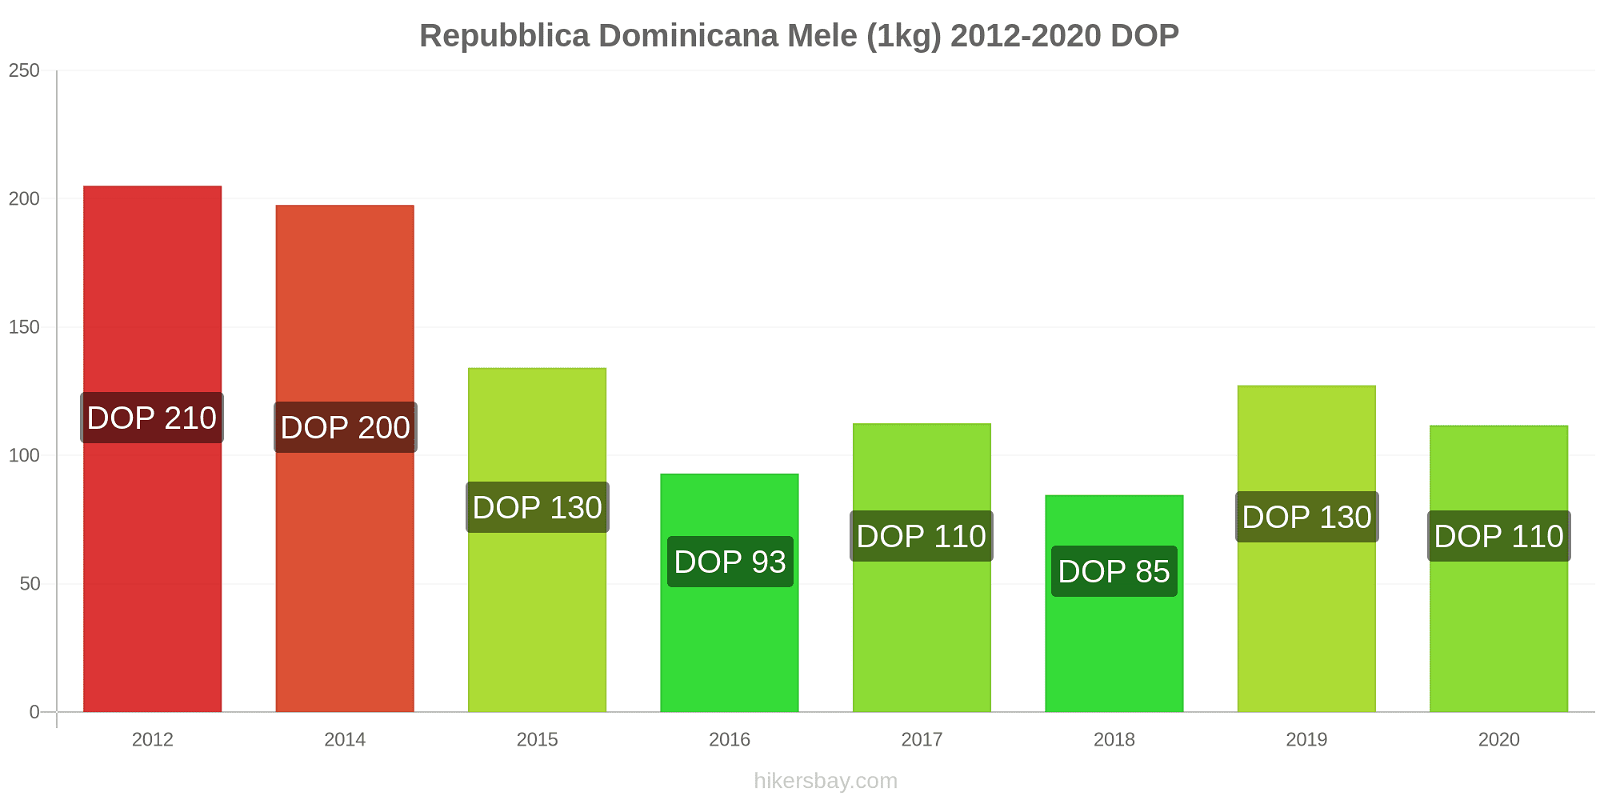 Repubblica Dominicana variazioni di prezzo Mele (1kg) hikersbay.com